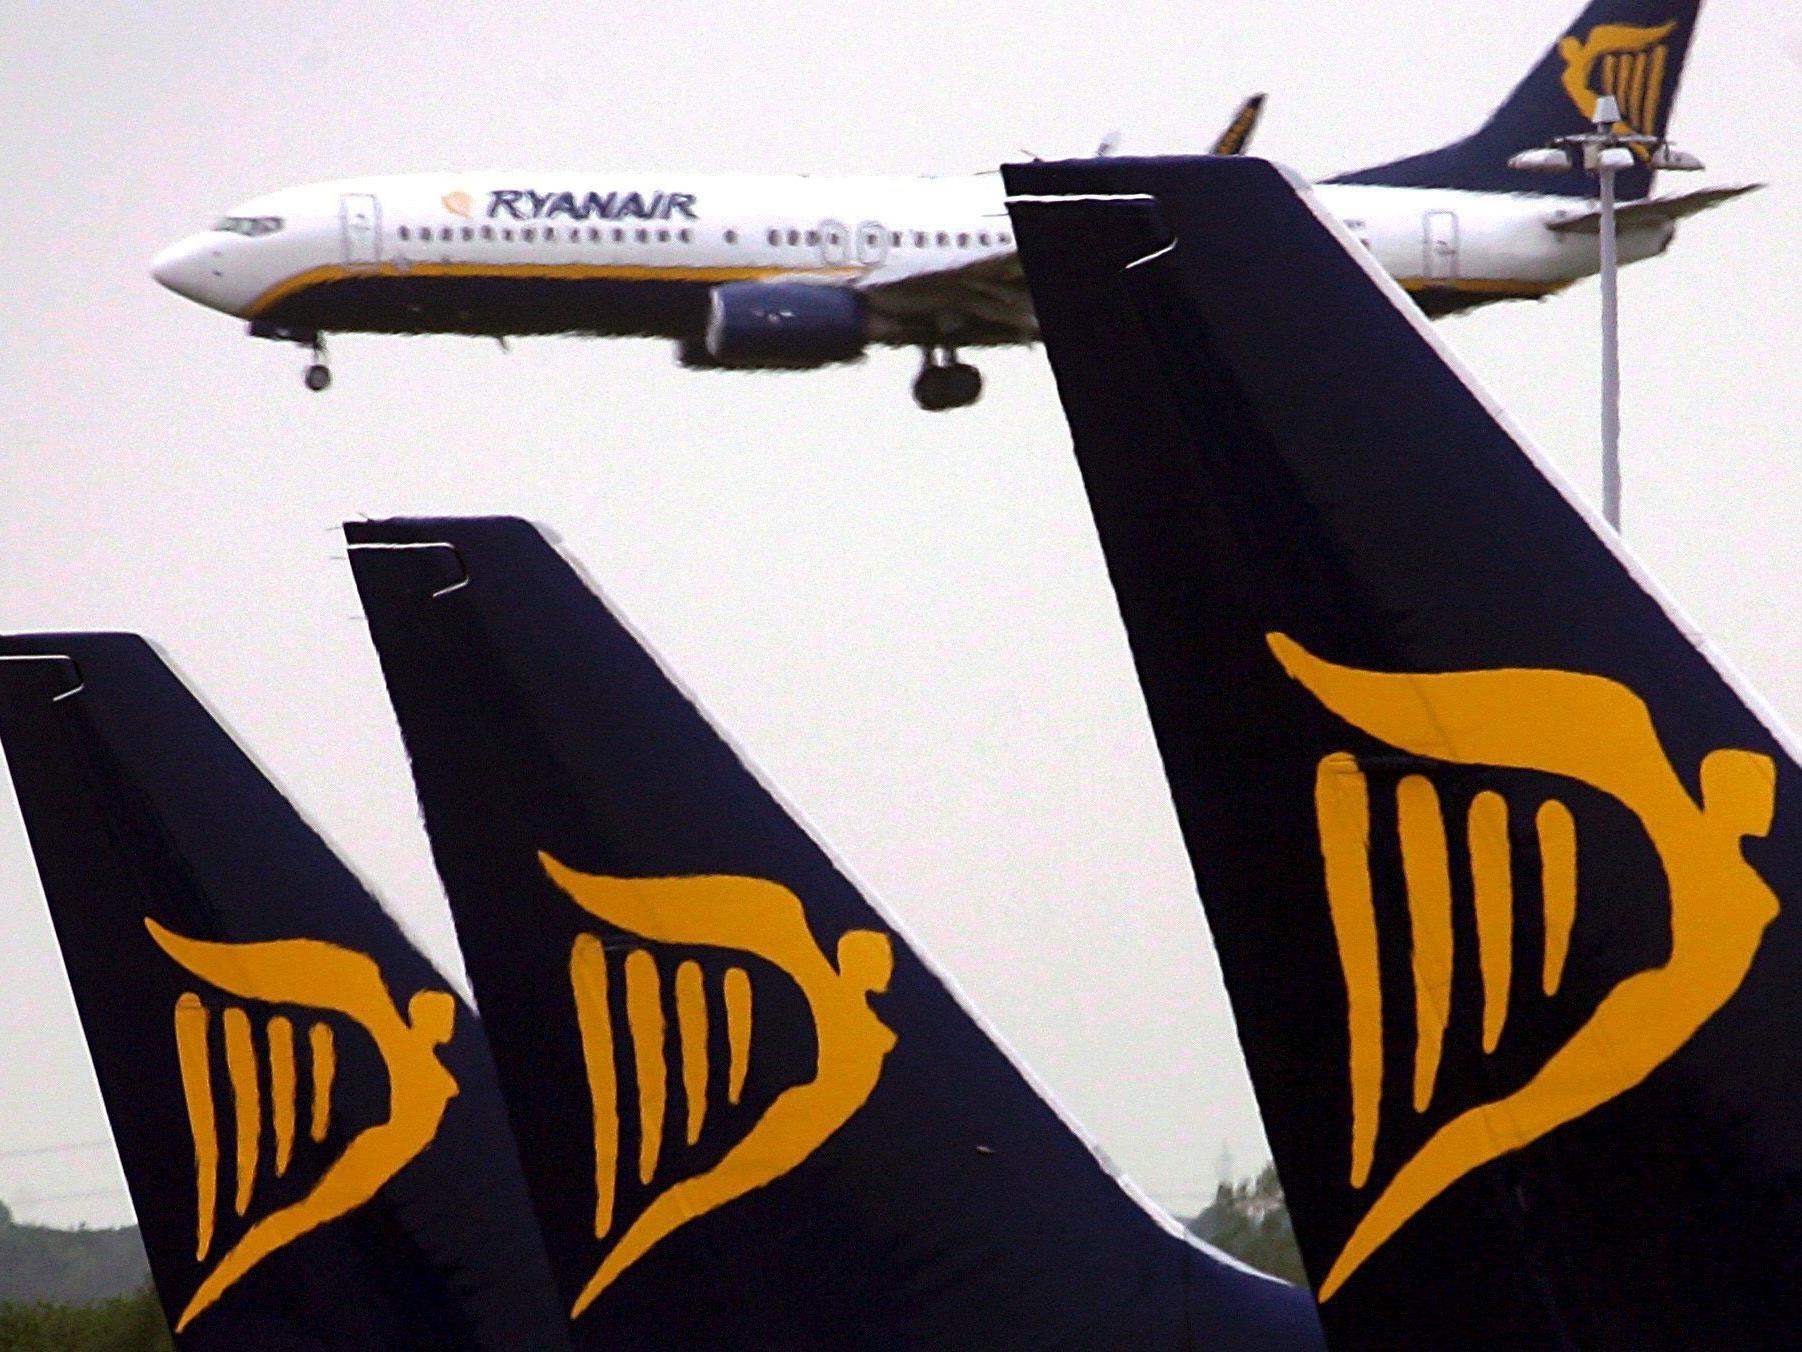 Billigflieger Ryanair will in München starten und landen.